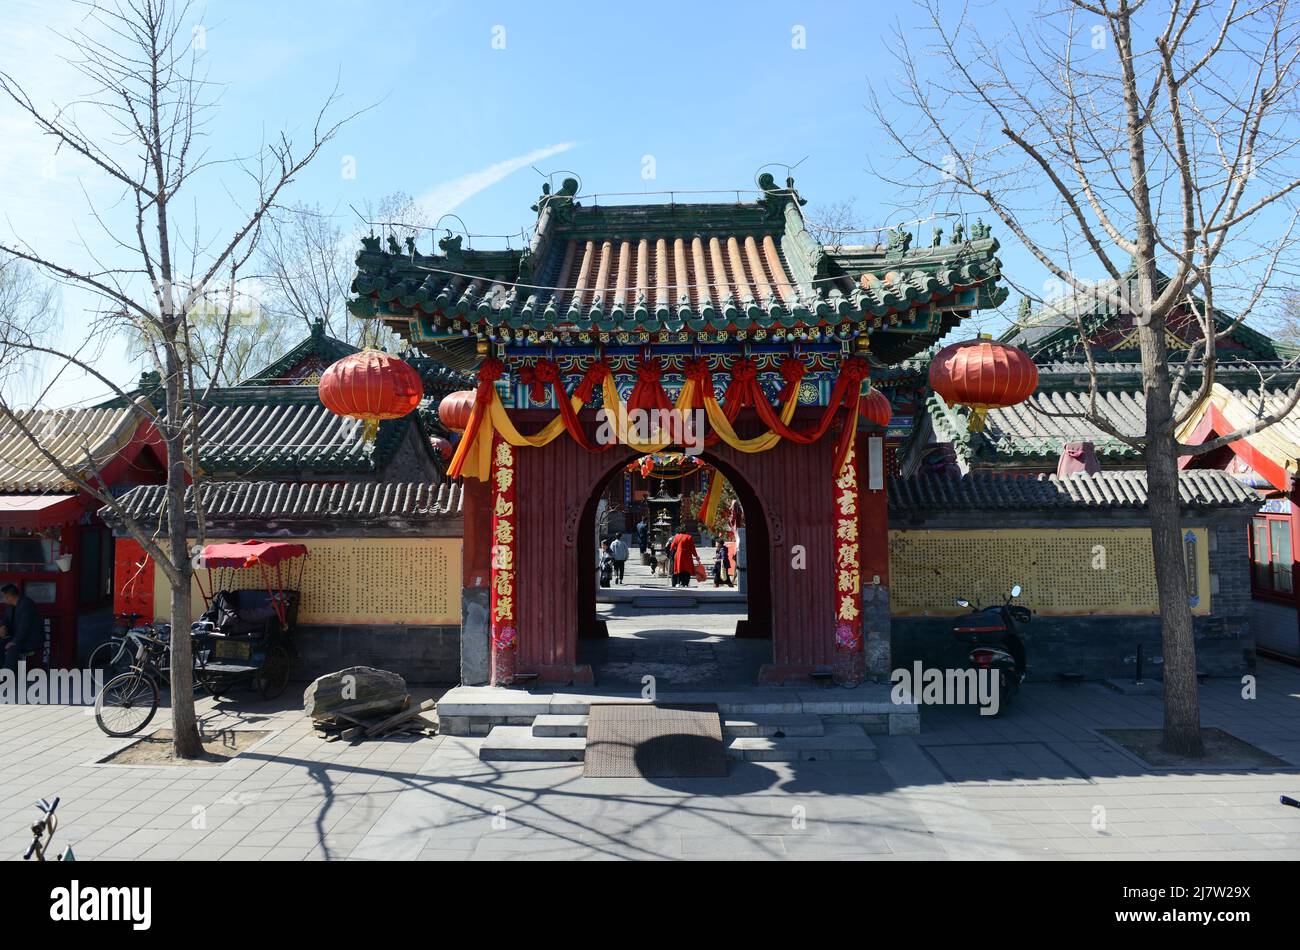 Der Feuertempel des Himmlischen Friedens (auch bekannt als Shichahai Feuertempel) ist ein alter taoistischer Tempel im Xicheng Bezirk in Peking, China. Stockfoto